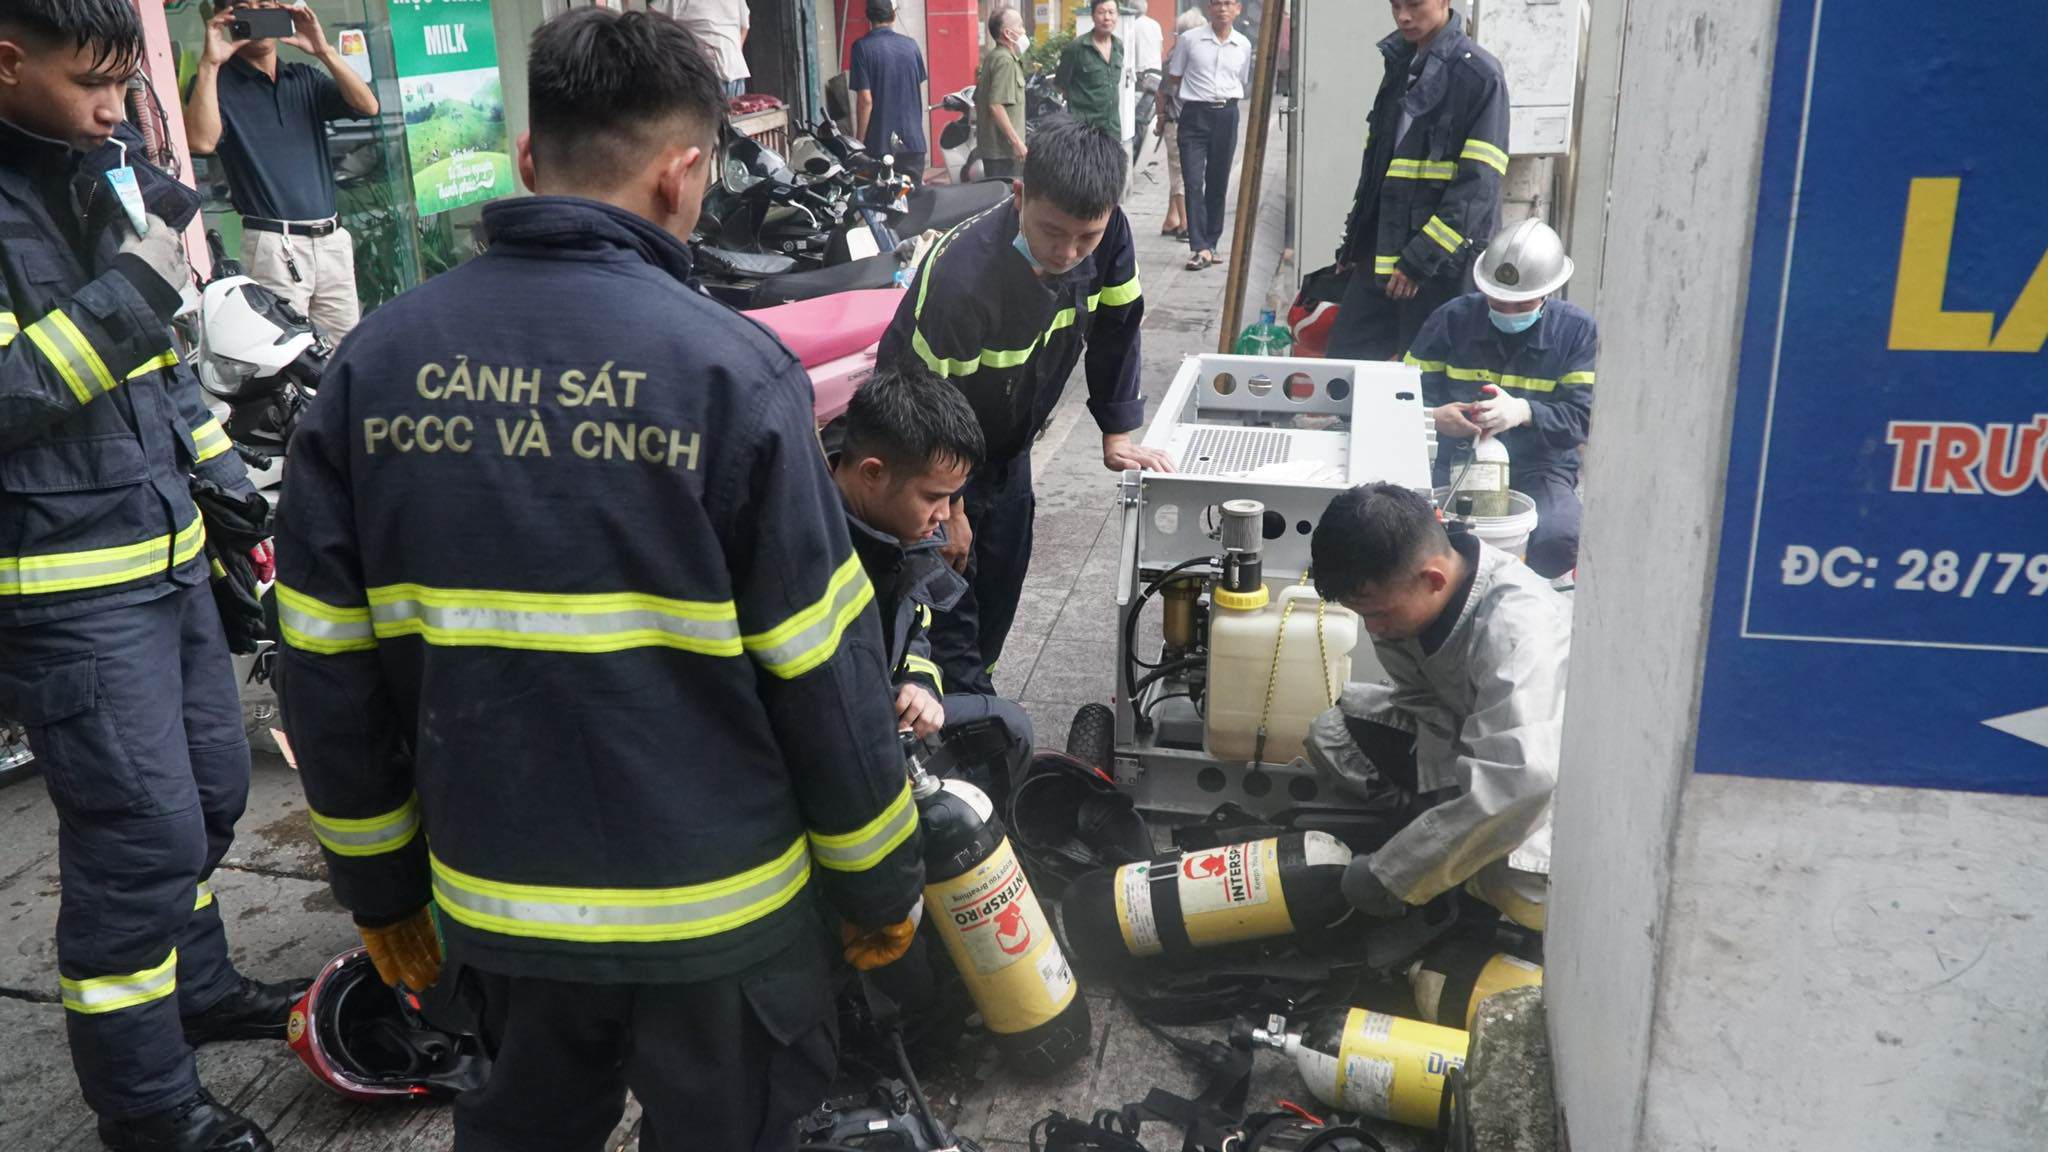 Vụ cháy 3 người tử vong ở Hà Nội: Nhiều cảnh sát bị thương trong lúc dập lửa - 4